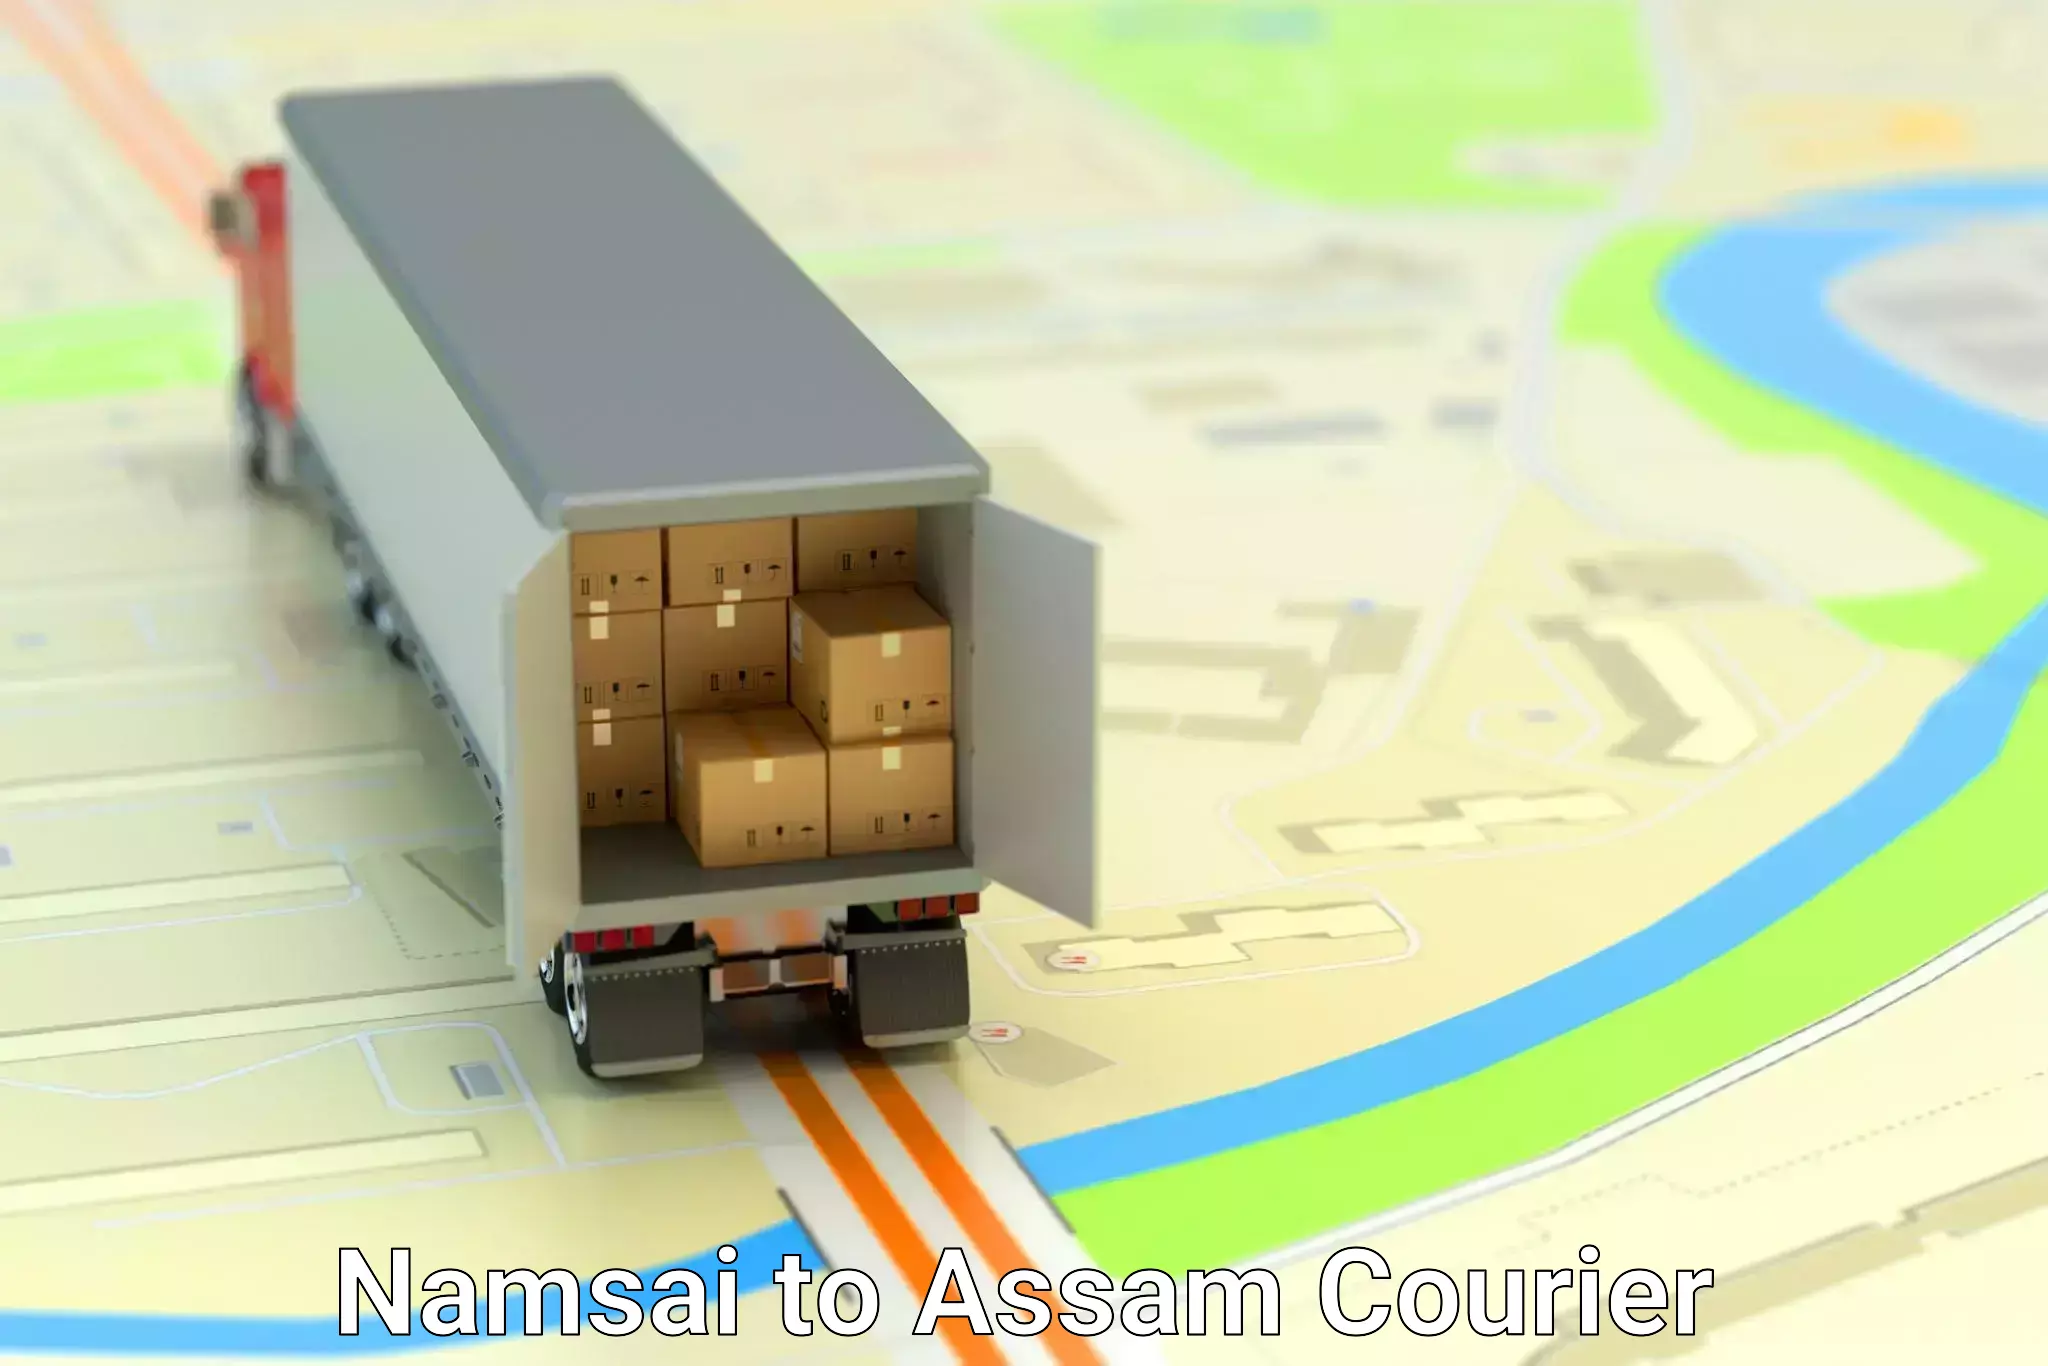 Smart courier technologies Namsai to Assam